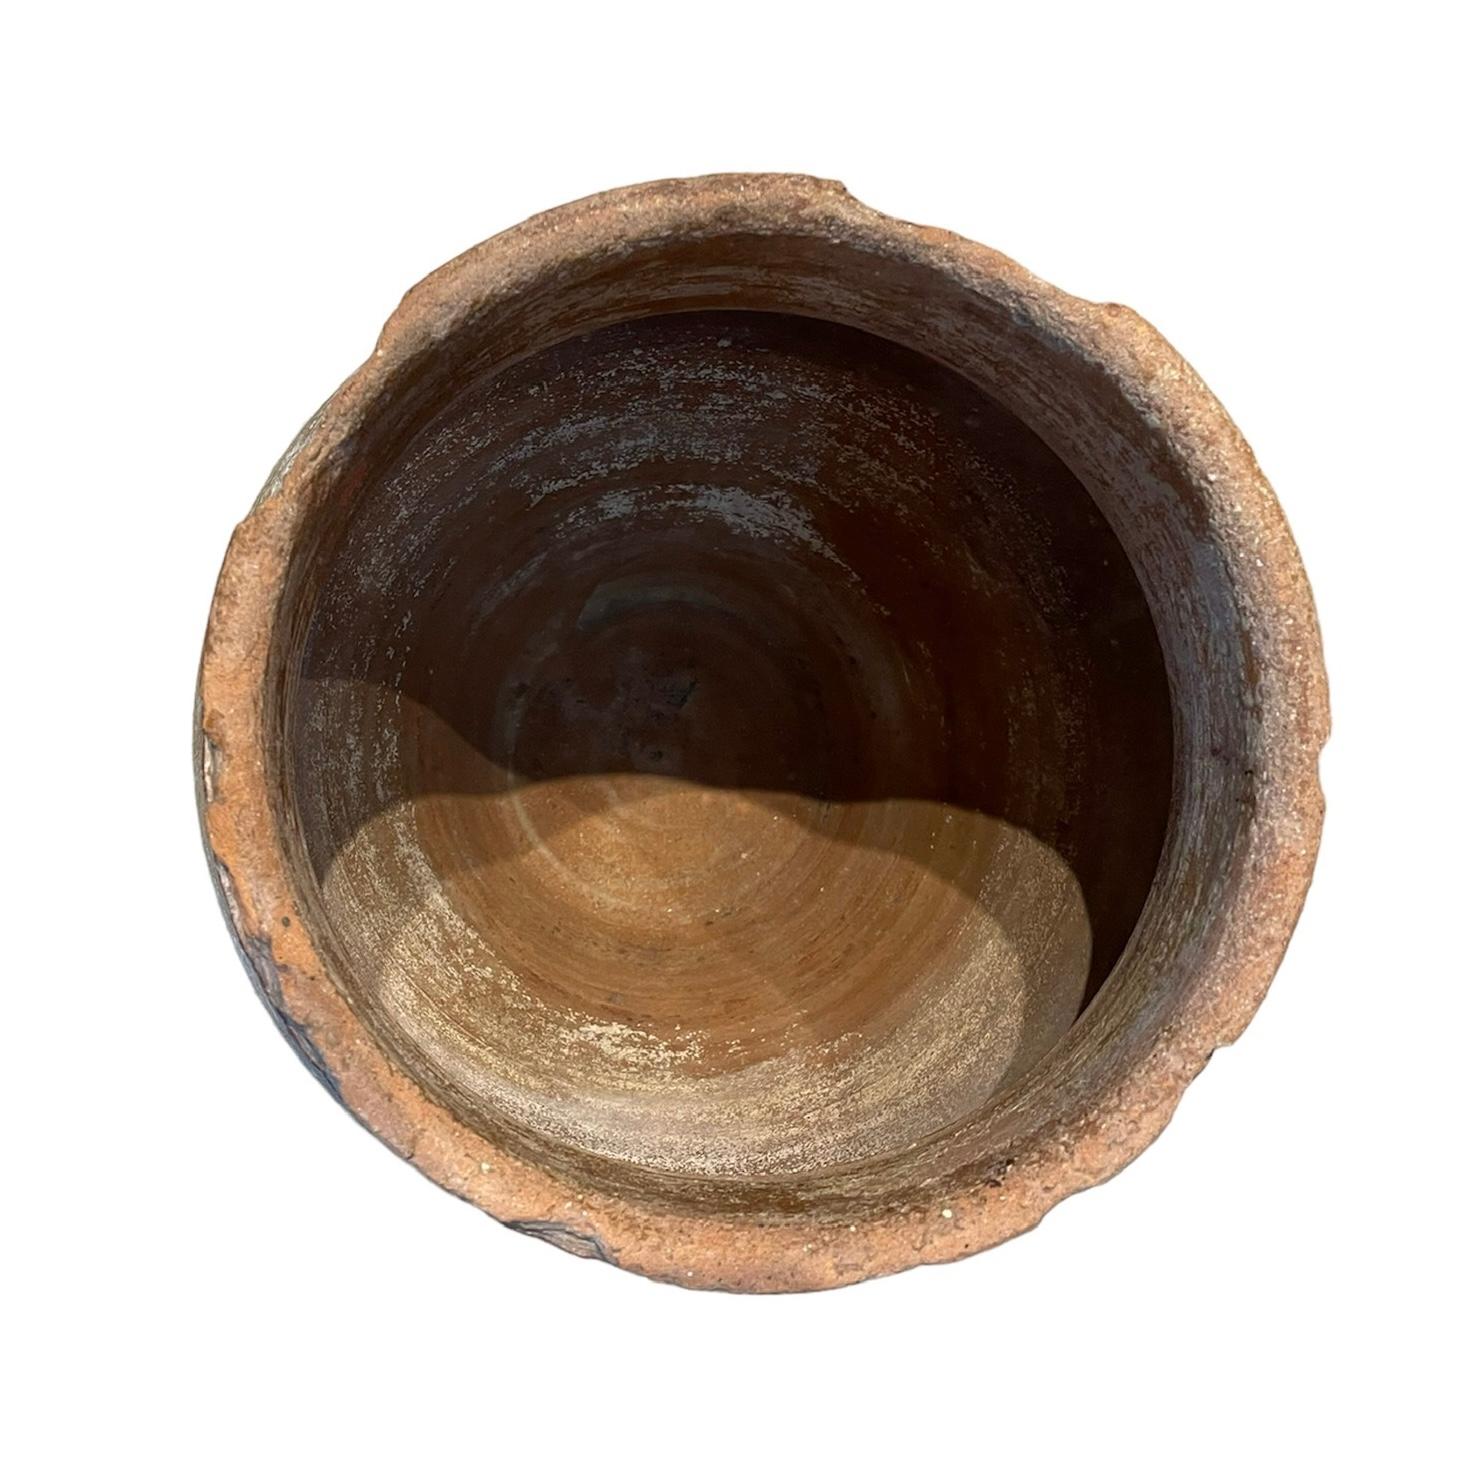 Il s'agit d'une petite amphore espagnole en terre cuite du 19e siècle. Elle représente une amphore large de couleur brique, ornée de volants comme dans sa bordure supérieure. Les amphores sont utilisées pour stocker et transporter de l'eau, du vin